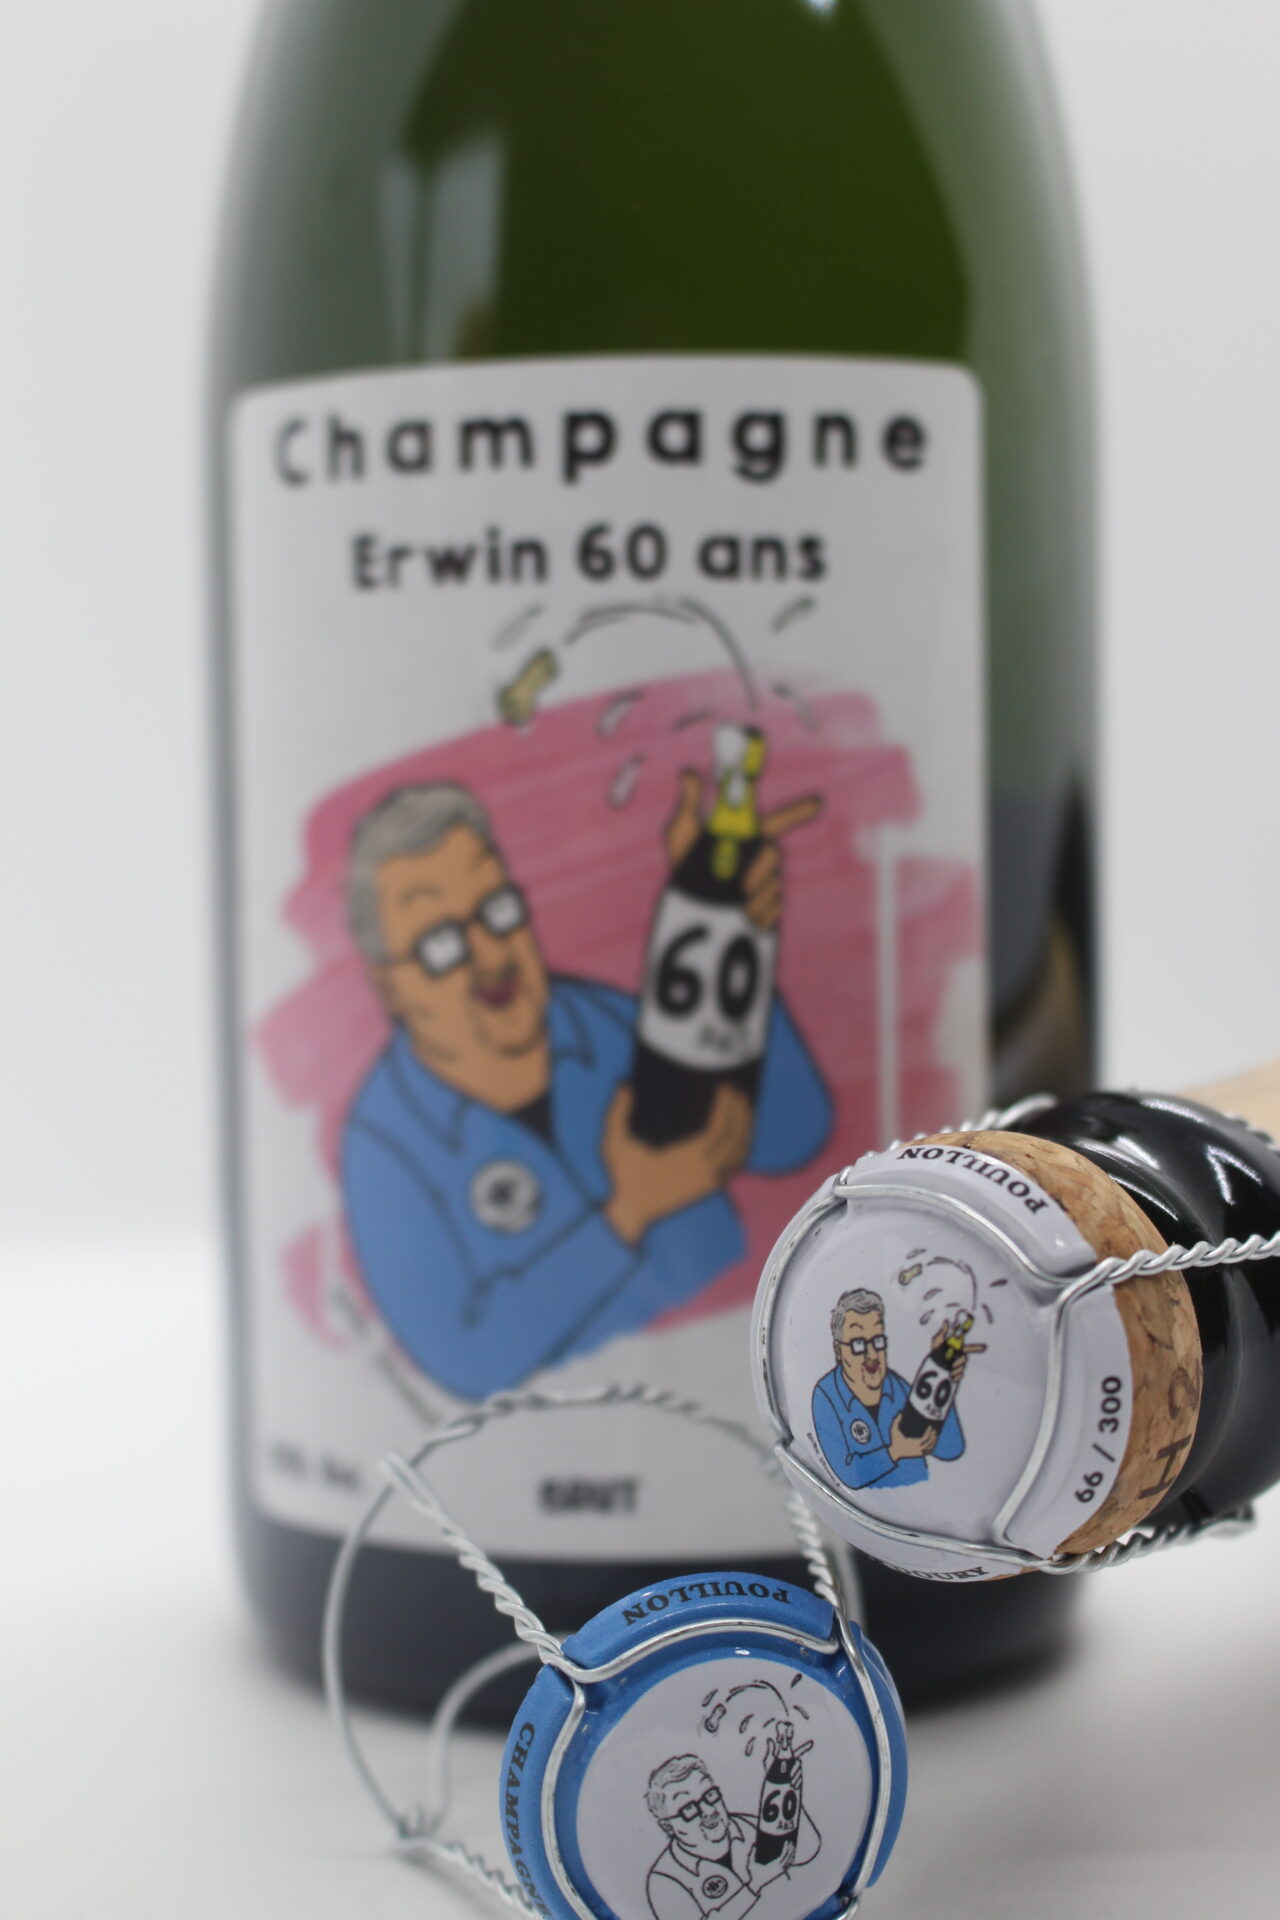 champagne en wijnen de blender erwin 60 ans